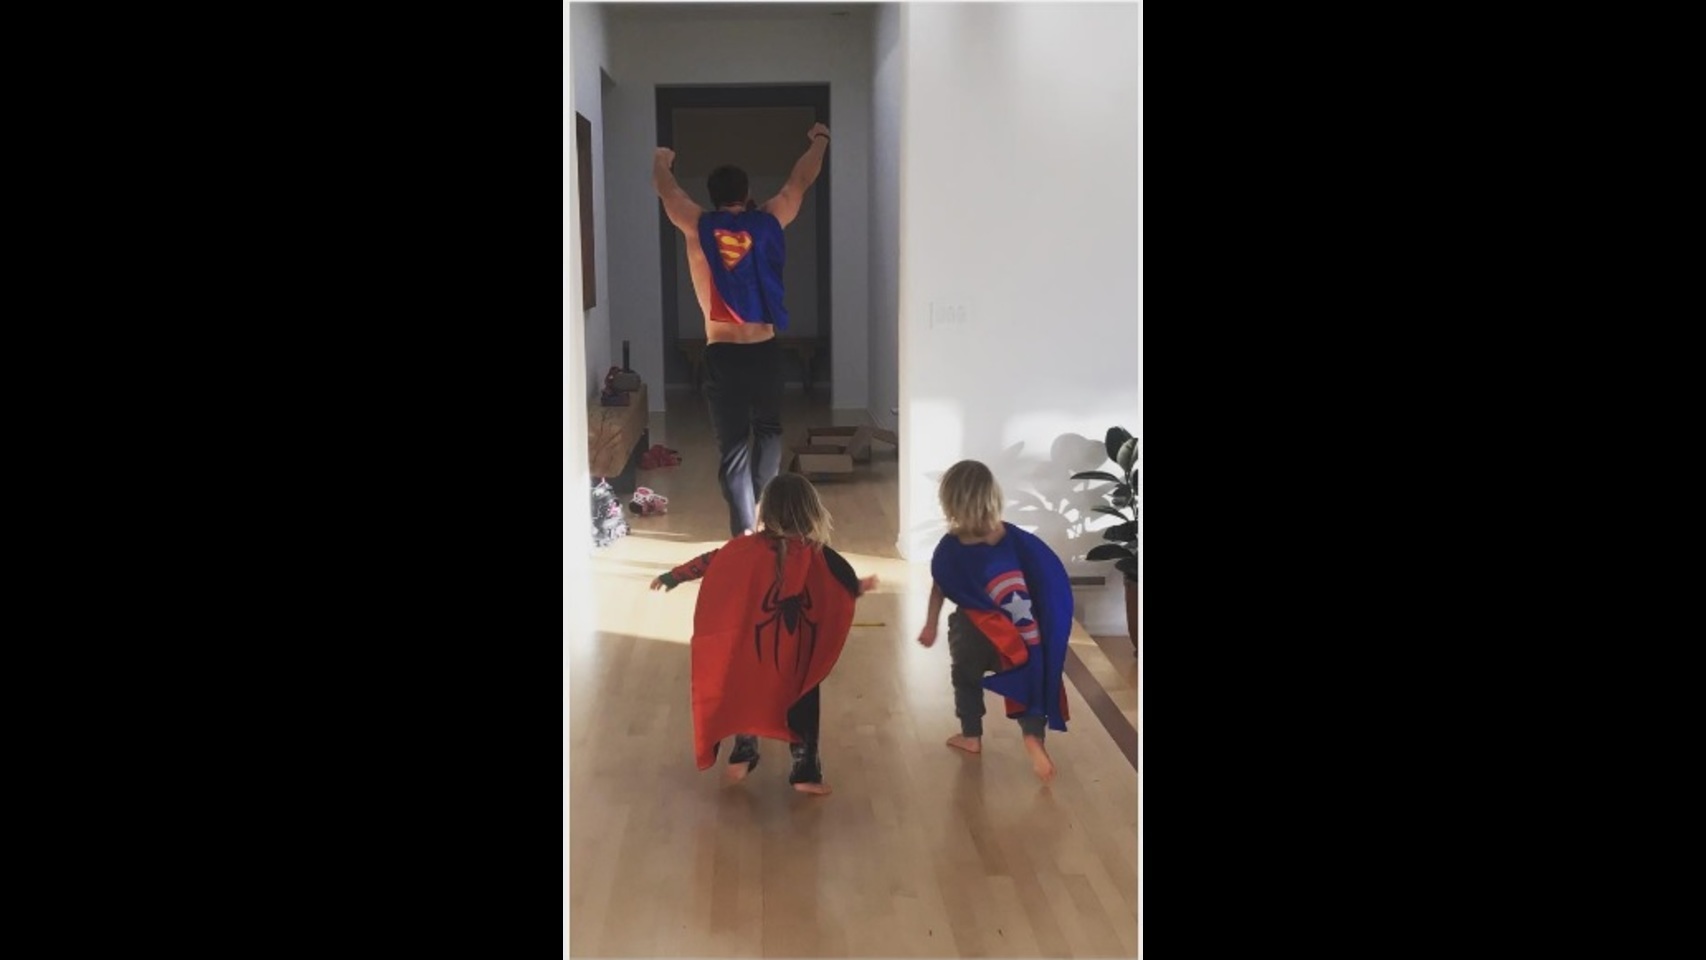 Elsa Pataky ha colgado esta fotografía de los tres chicos de su casa. Su marido, Chris Hemsworth con capa de Superman, y sus pequeños de Spiderman y Capitán América, recorrían los pasillos del hogar en busca de villanos.